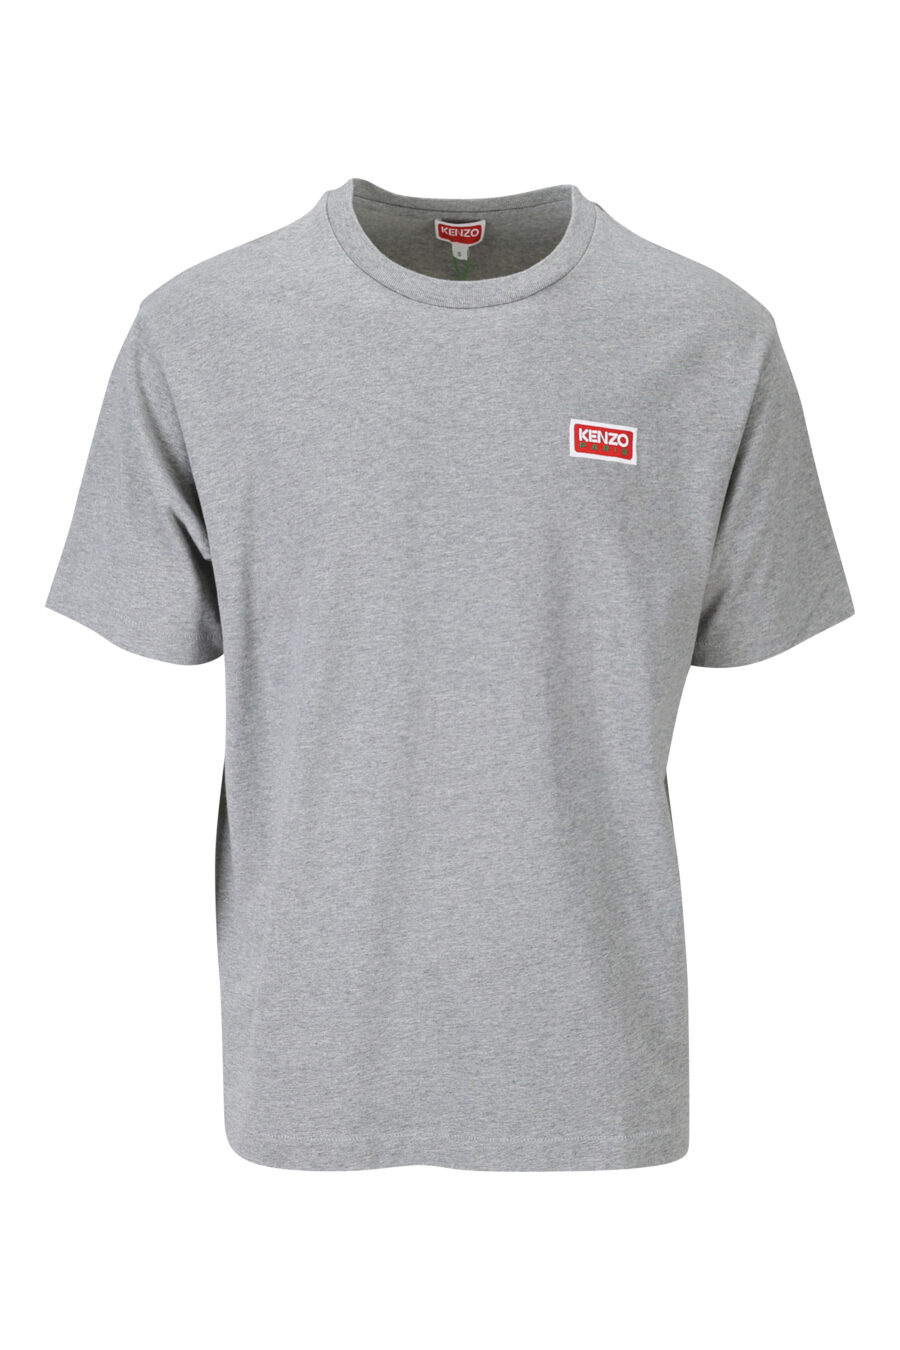 Camiseta gris con minilogo "kenzo paris" - 3612230543188